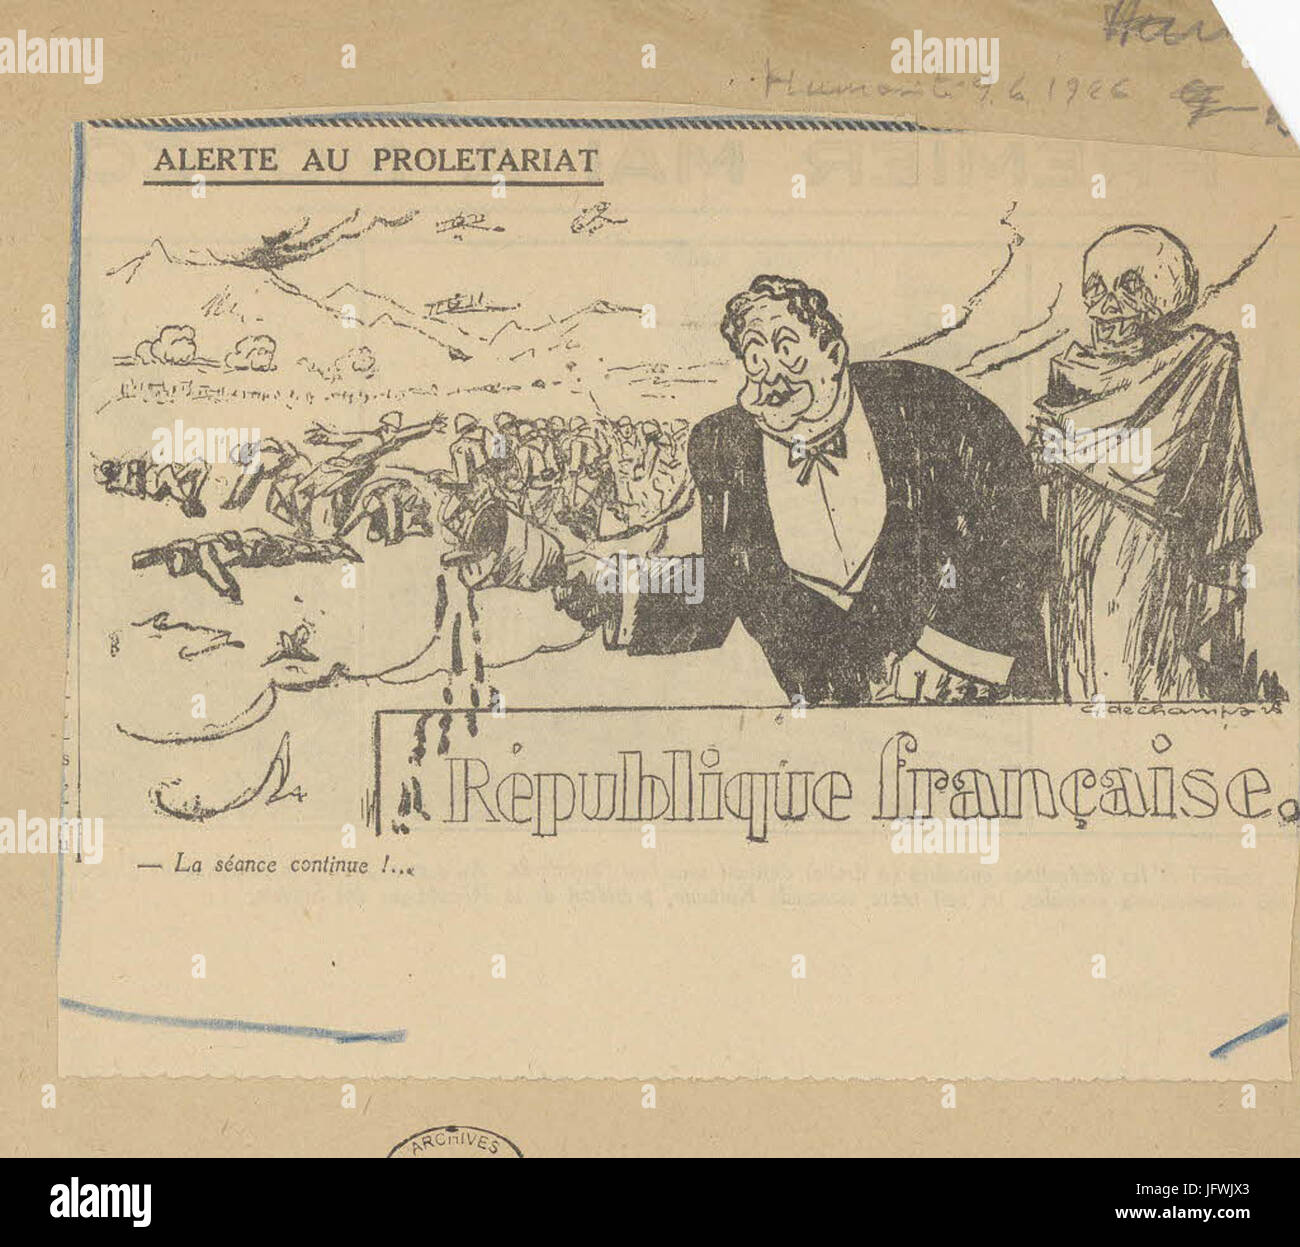 Caricatura de Paul Painlevé, président du Conseil, par laquelle il est accusé de fabriquer de faux papiers diplomatique - Archives Nationales - 313AP-20 - (2) Foto de stock